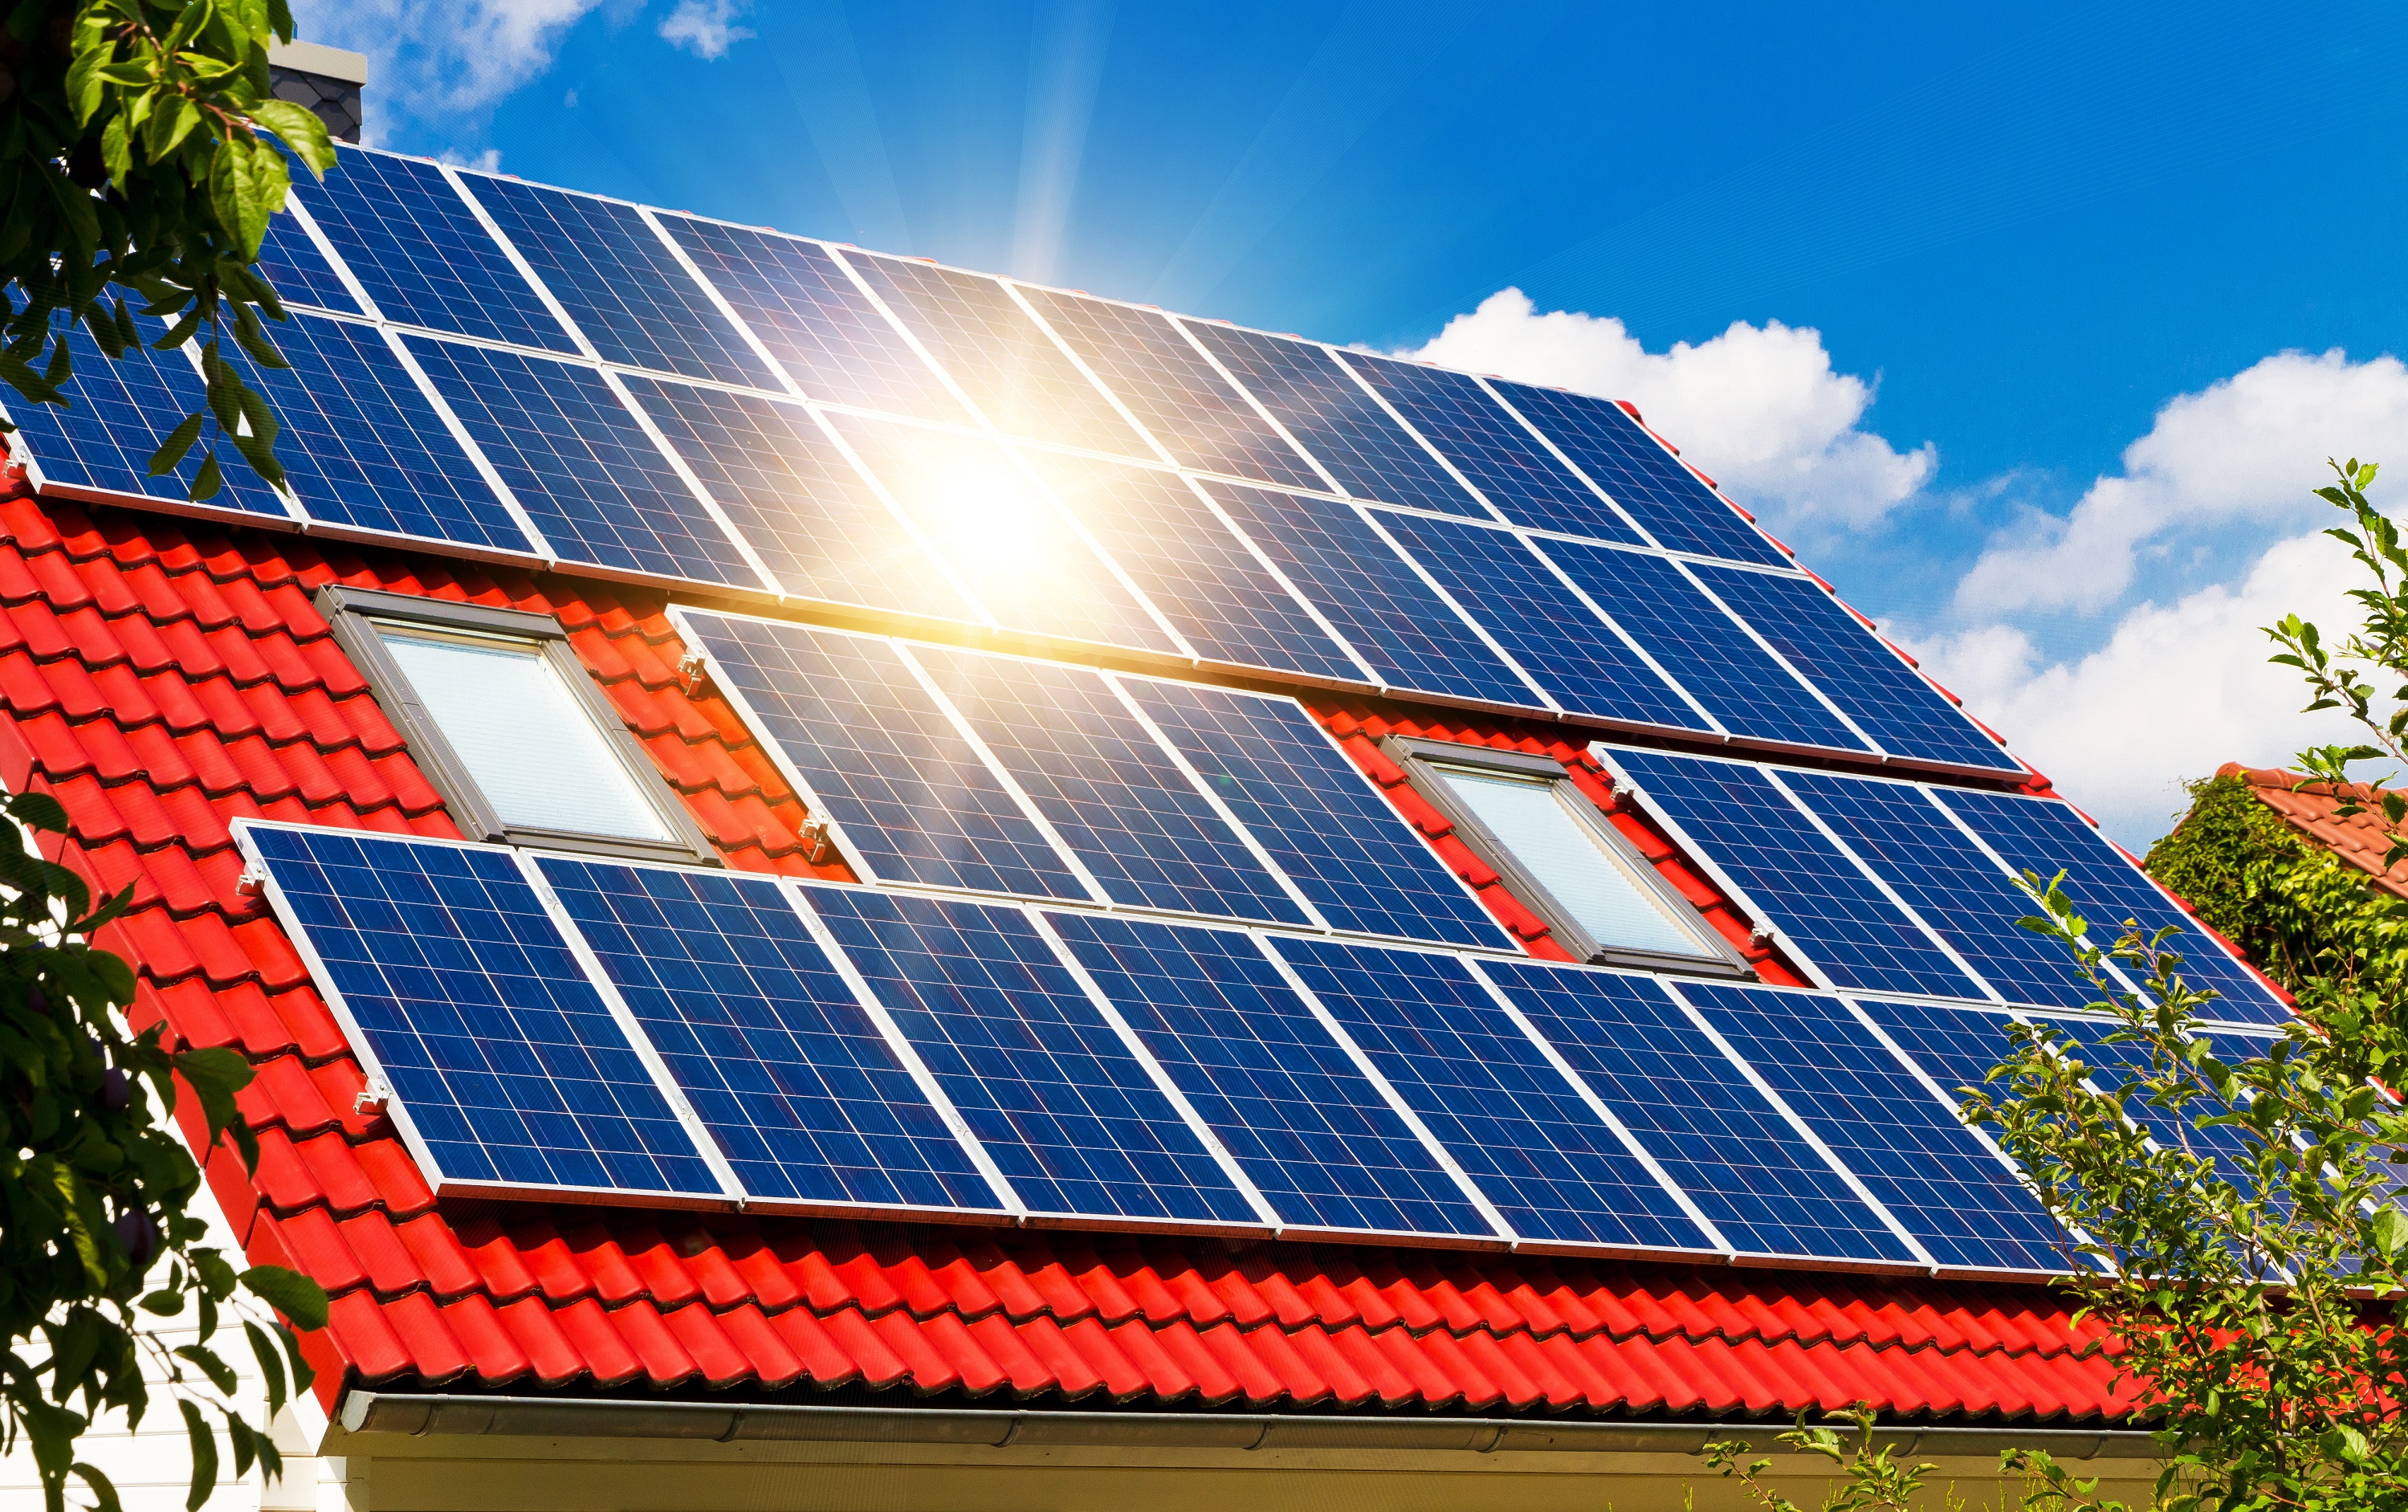 Energia Solar Cresce 134,97% No Primeiro Trimestre de 2019 Em Relação a 2018